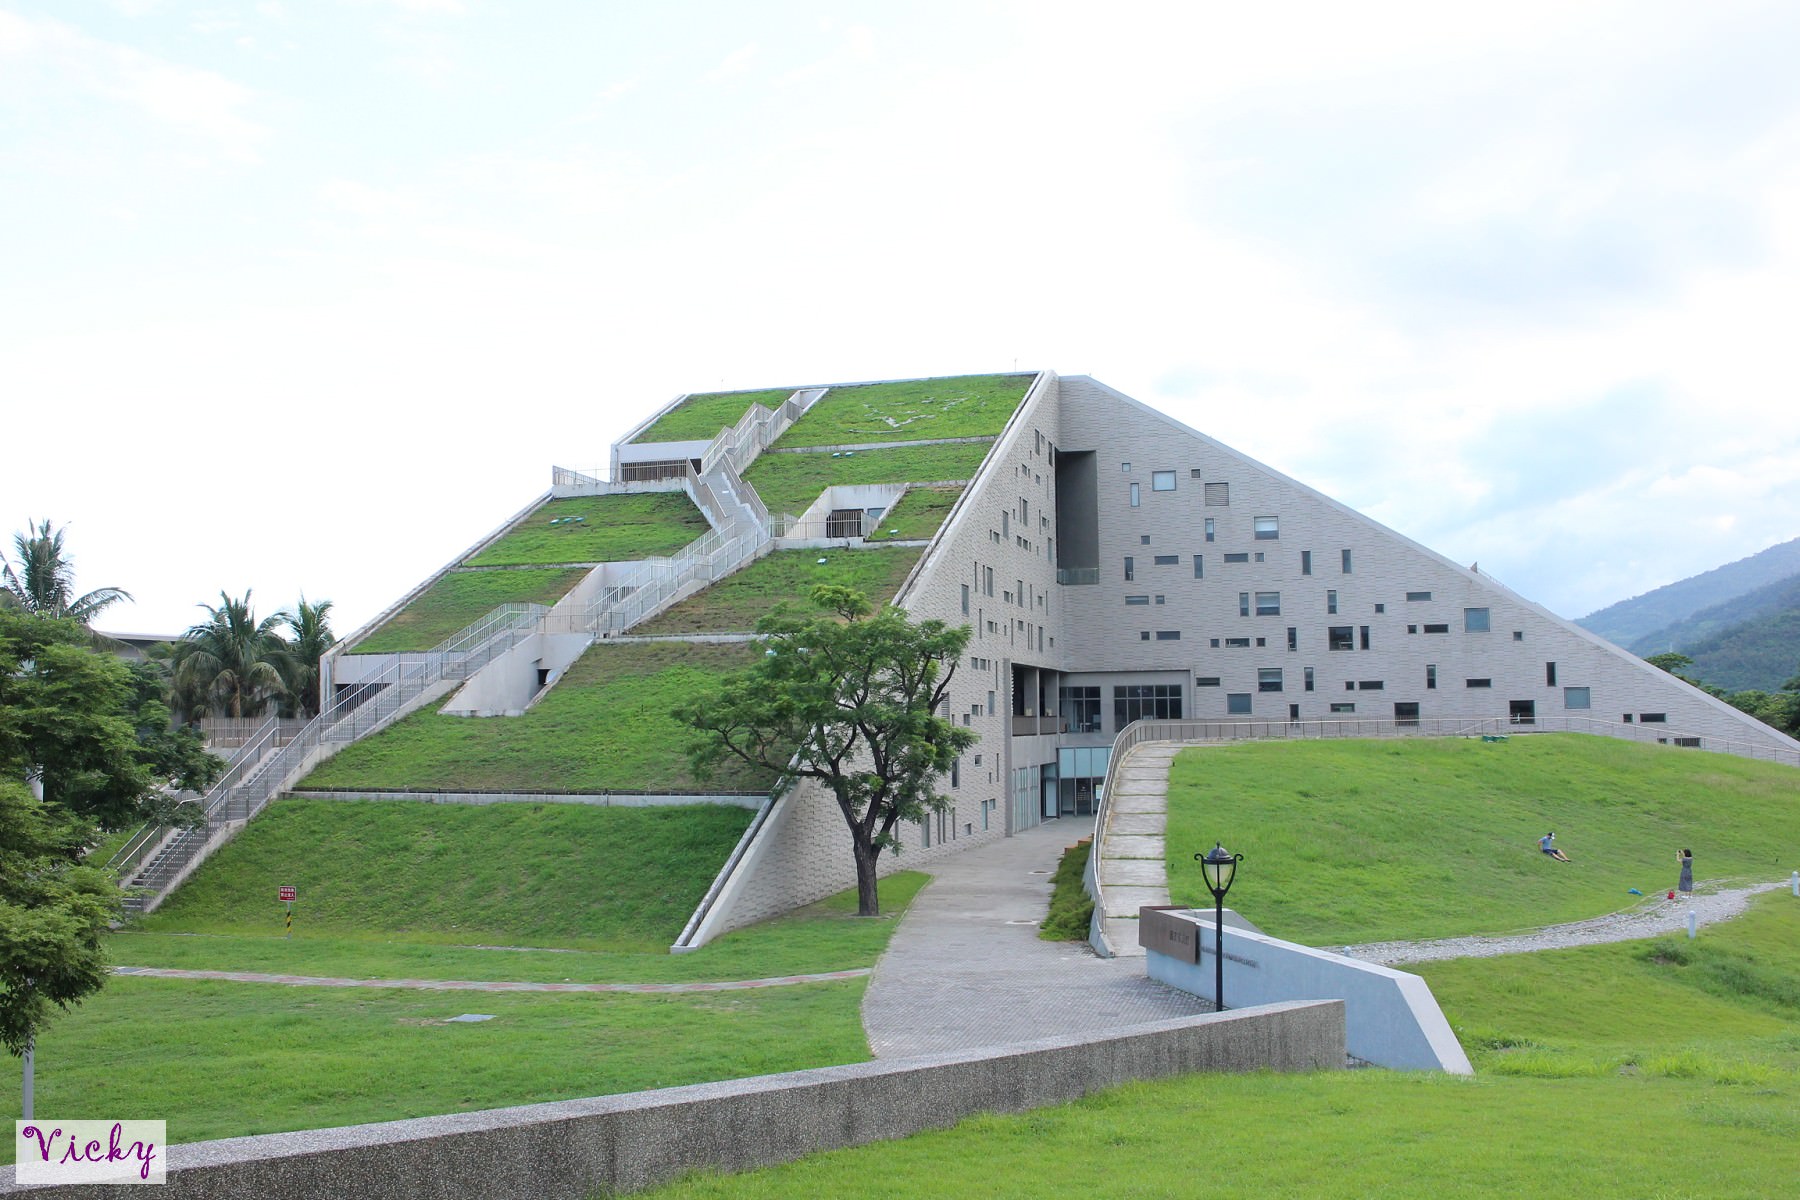 台東大學圖資館：看山不是山，看水澄如鏡，此館獲得國際網站列為全球8座獨特圖書館之一